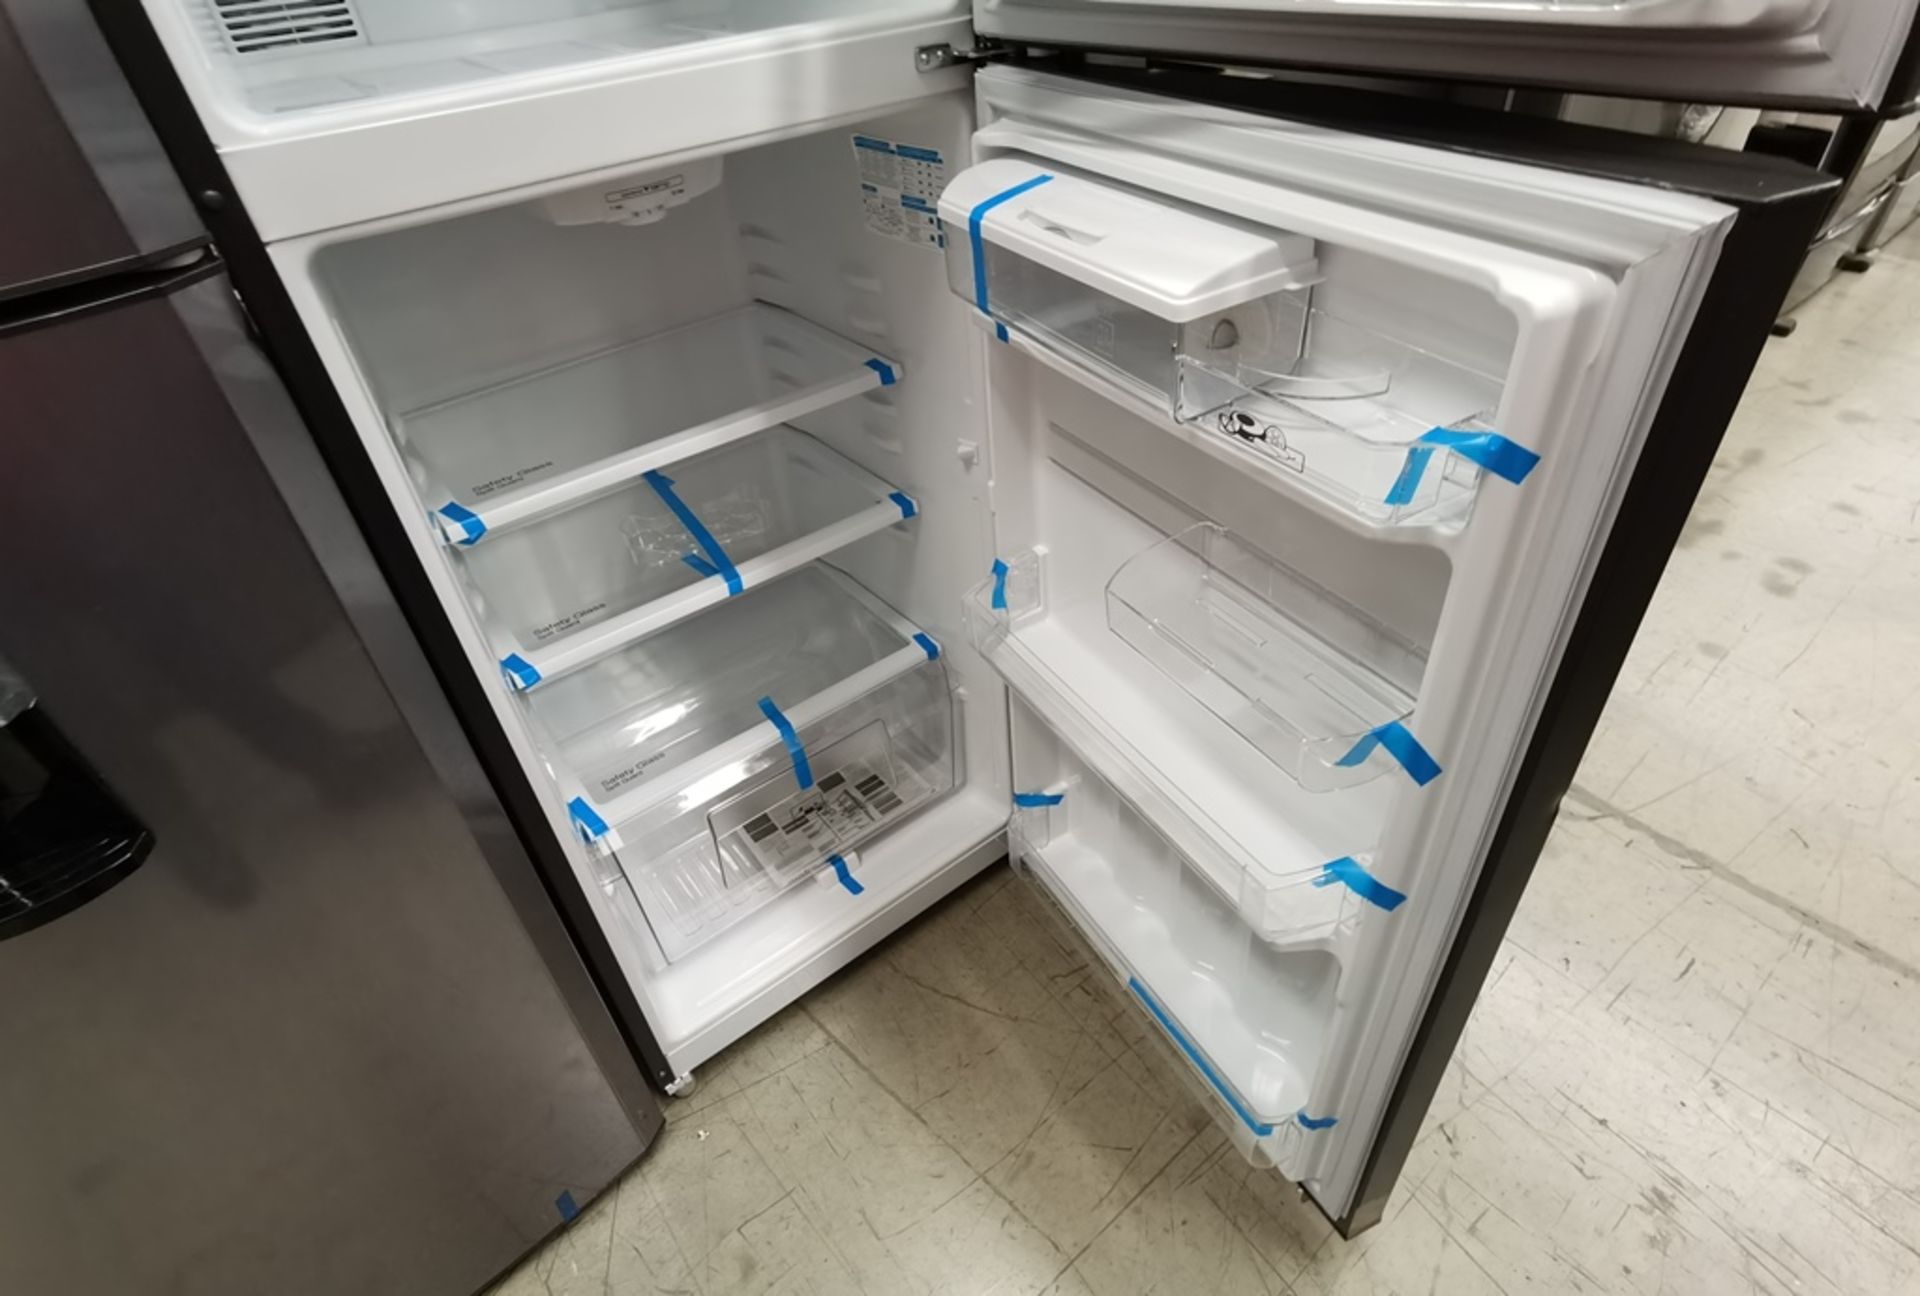 Lote De 2 Refrigeradores Contiene: 1 Refrigerador Marca Mabe, Modelo RME360FD, Serie 2205B503535, C - Image 9 of 17